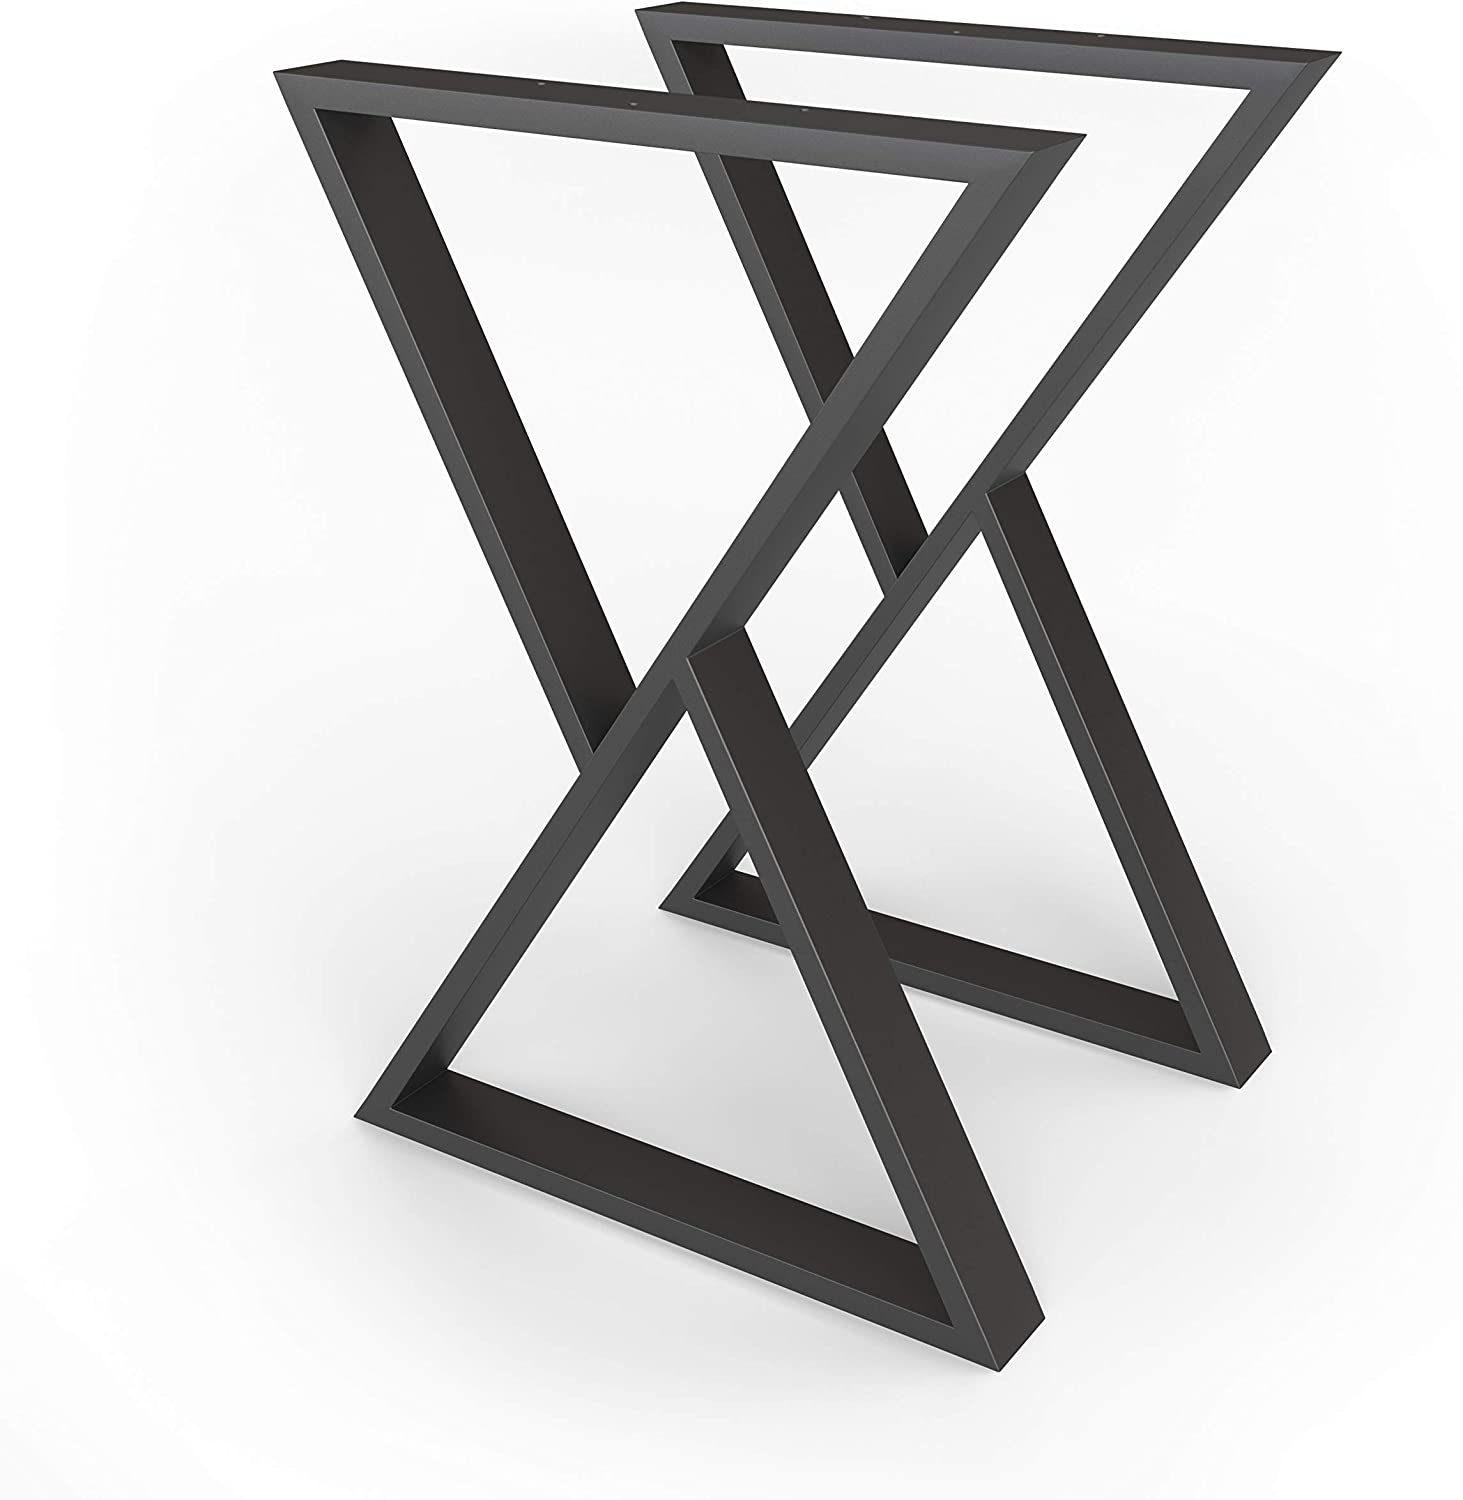 Tischgestell OS Metall Schwarz 2-er Set 55x72 cm